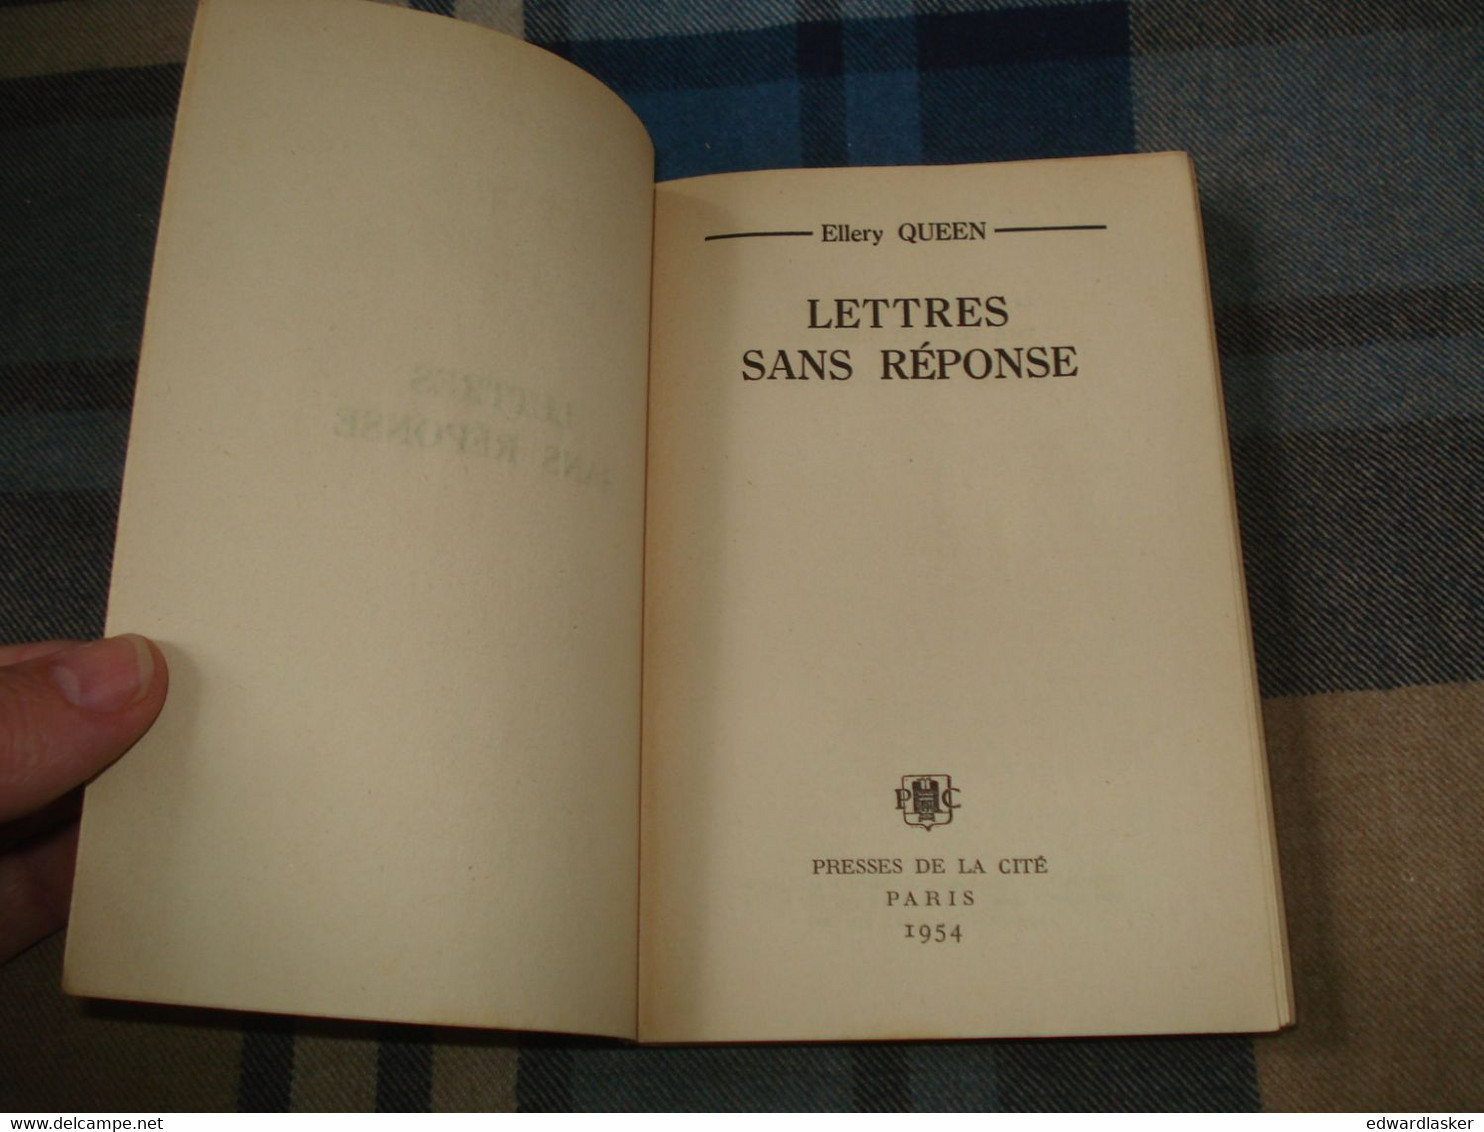 Un MYSTERE N°161 : LETTRES Sans RÉPONSE /Ellery QUEEN - Mars 1954 - Presses De La Cité